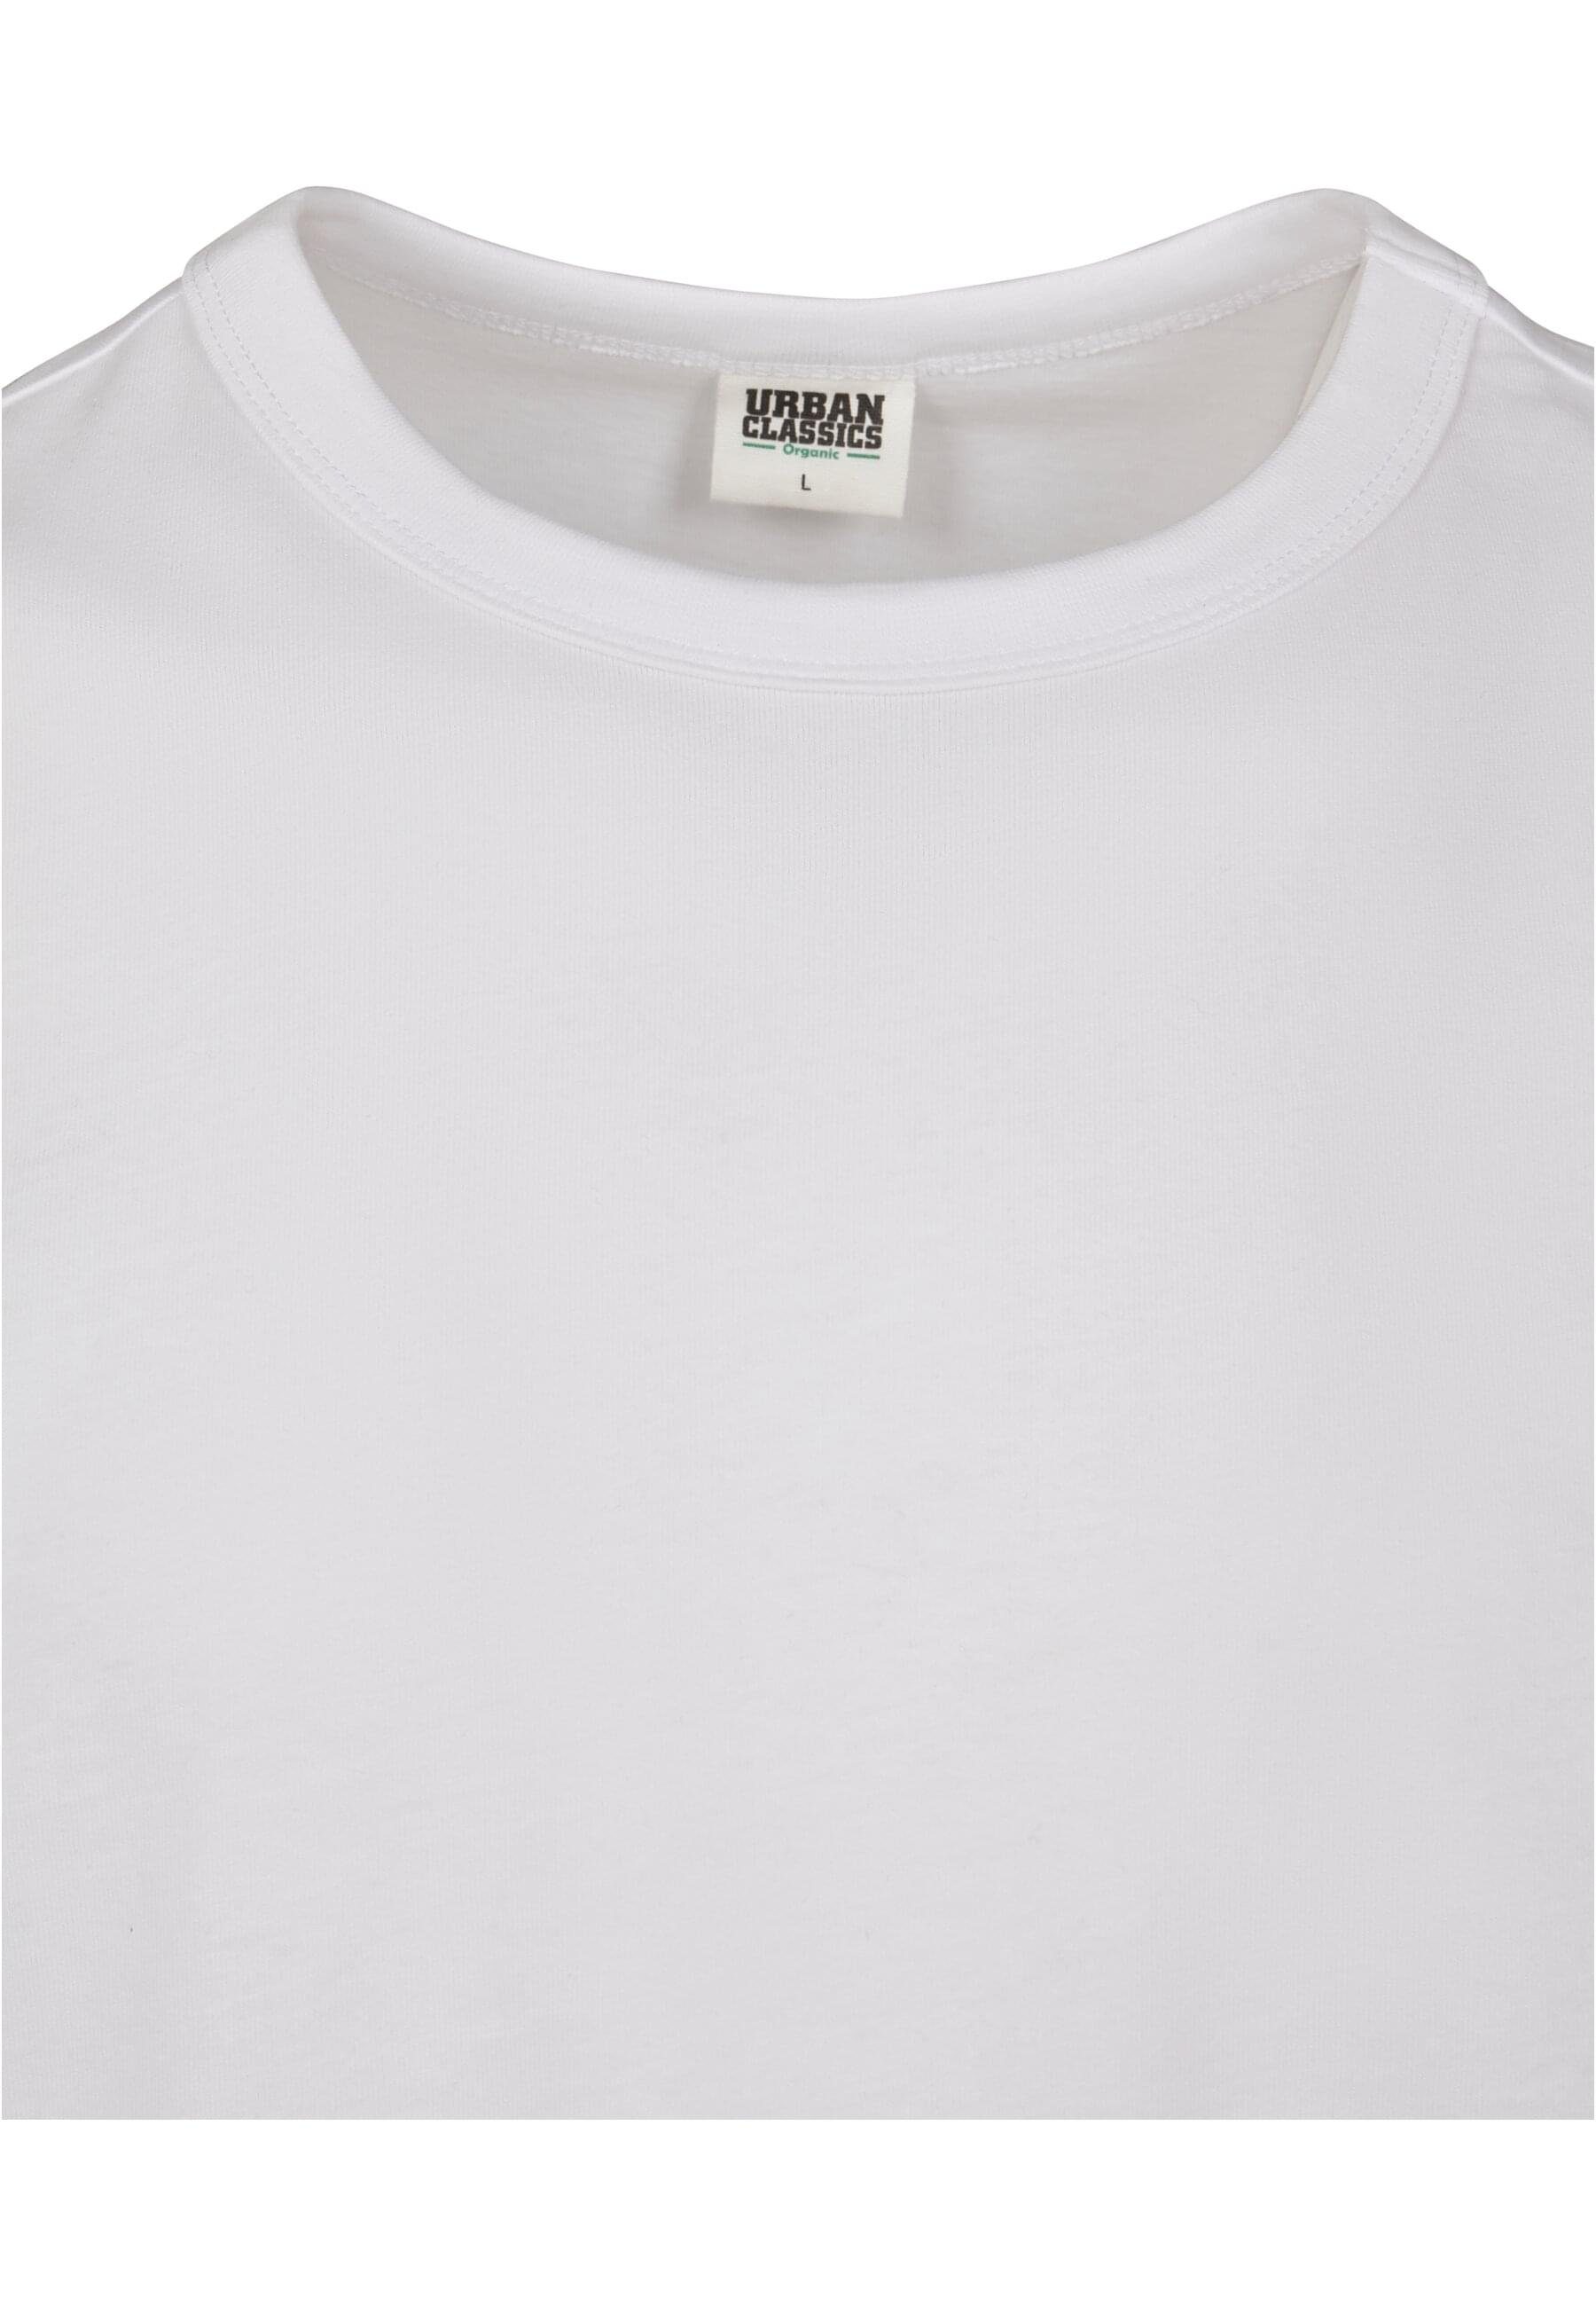 URBAN CLASSICS T-Shirt Tee Herren (1-tlg) white Basic Organic